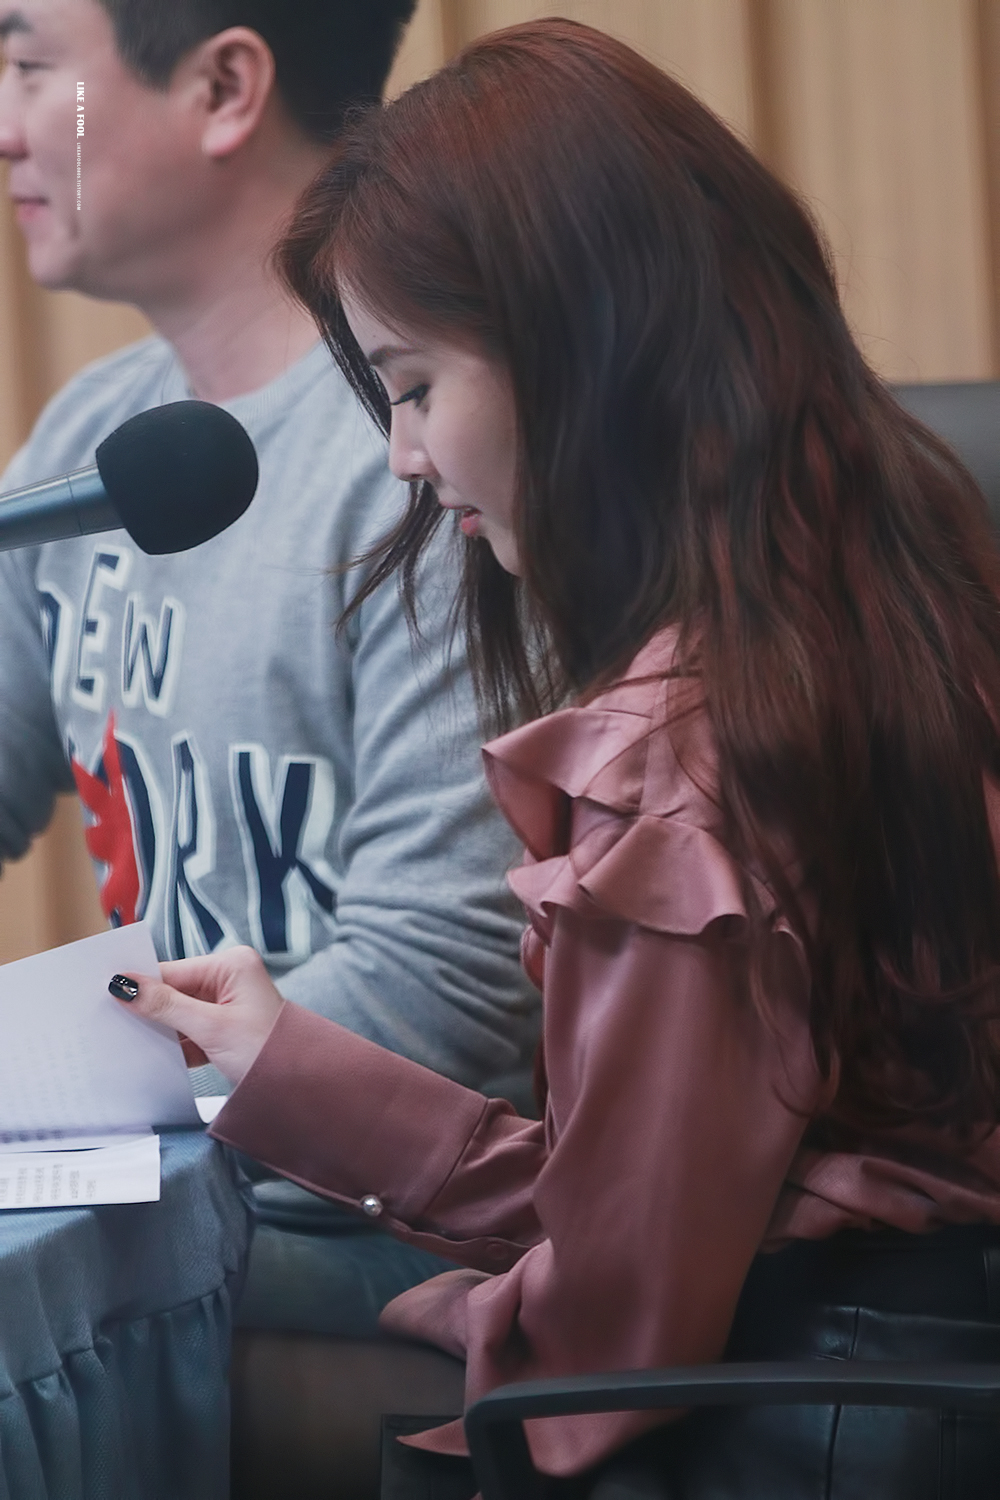 [PIC][26-01-2017]SeoHyun tham dự "SBS Radio Cultwo Show" vào chiều nay - Page 2 2407784F5889D9D1030781